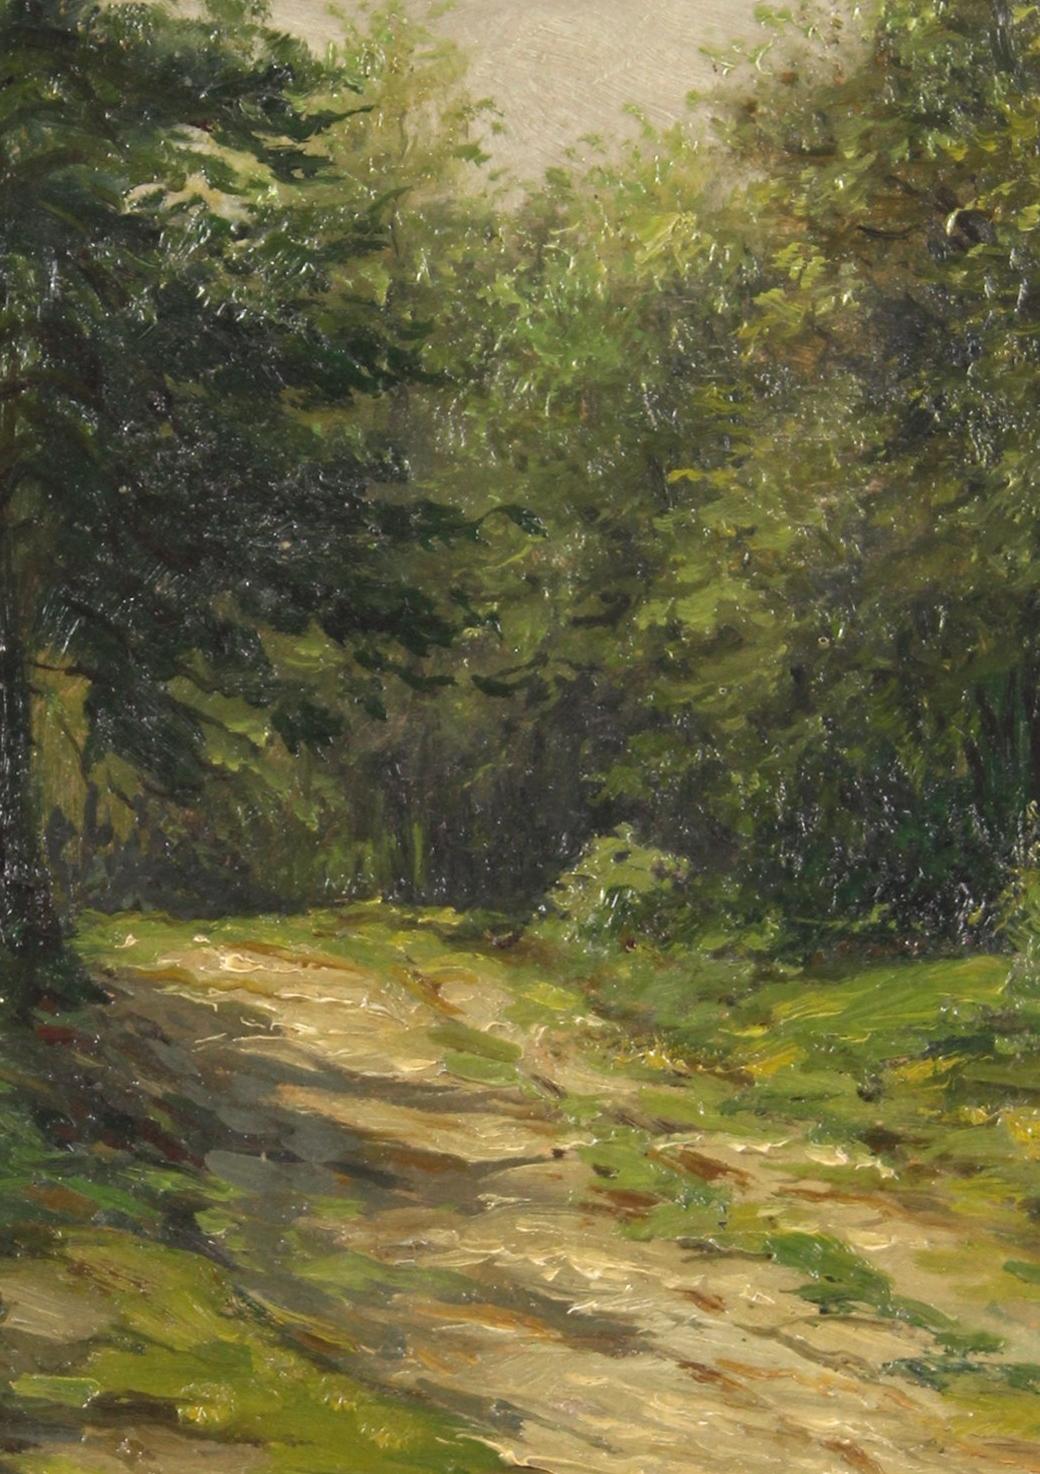 Chemin de bois ensoleillé - Un chemin de forêt aux couleurs vives comme un espace d'imagination - - Painting de Wilhelm Schütze